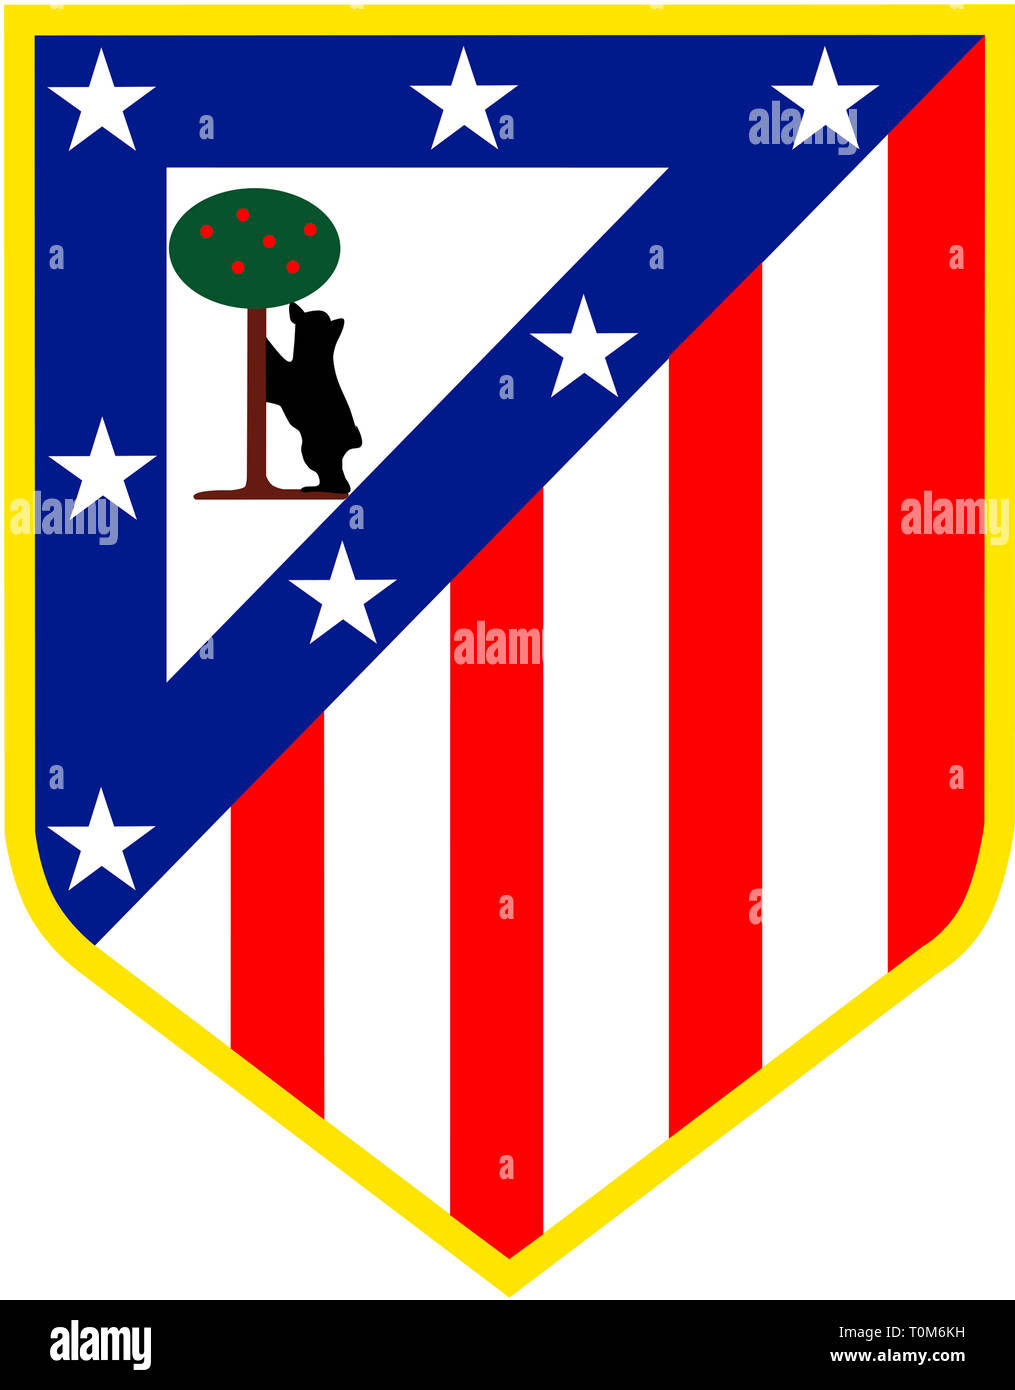 El logotipo del equipo fútbol español Atlético Madrid. - España Fotografía stock Alamy